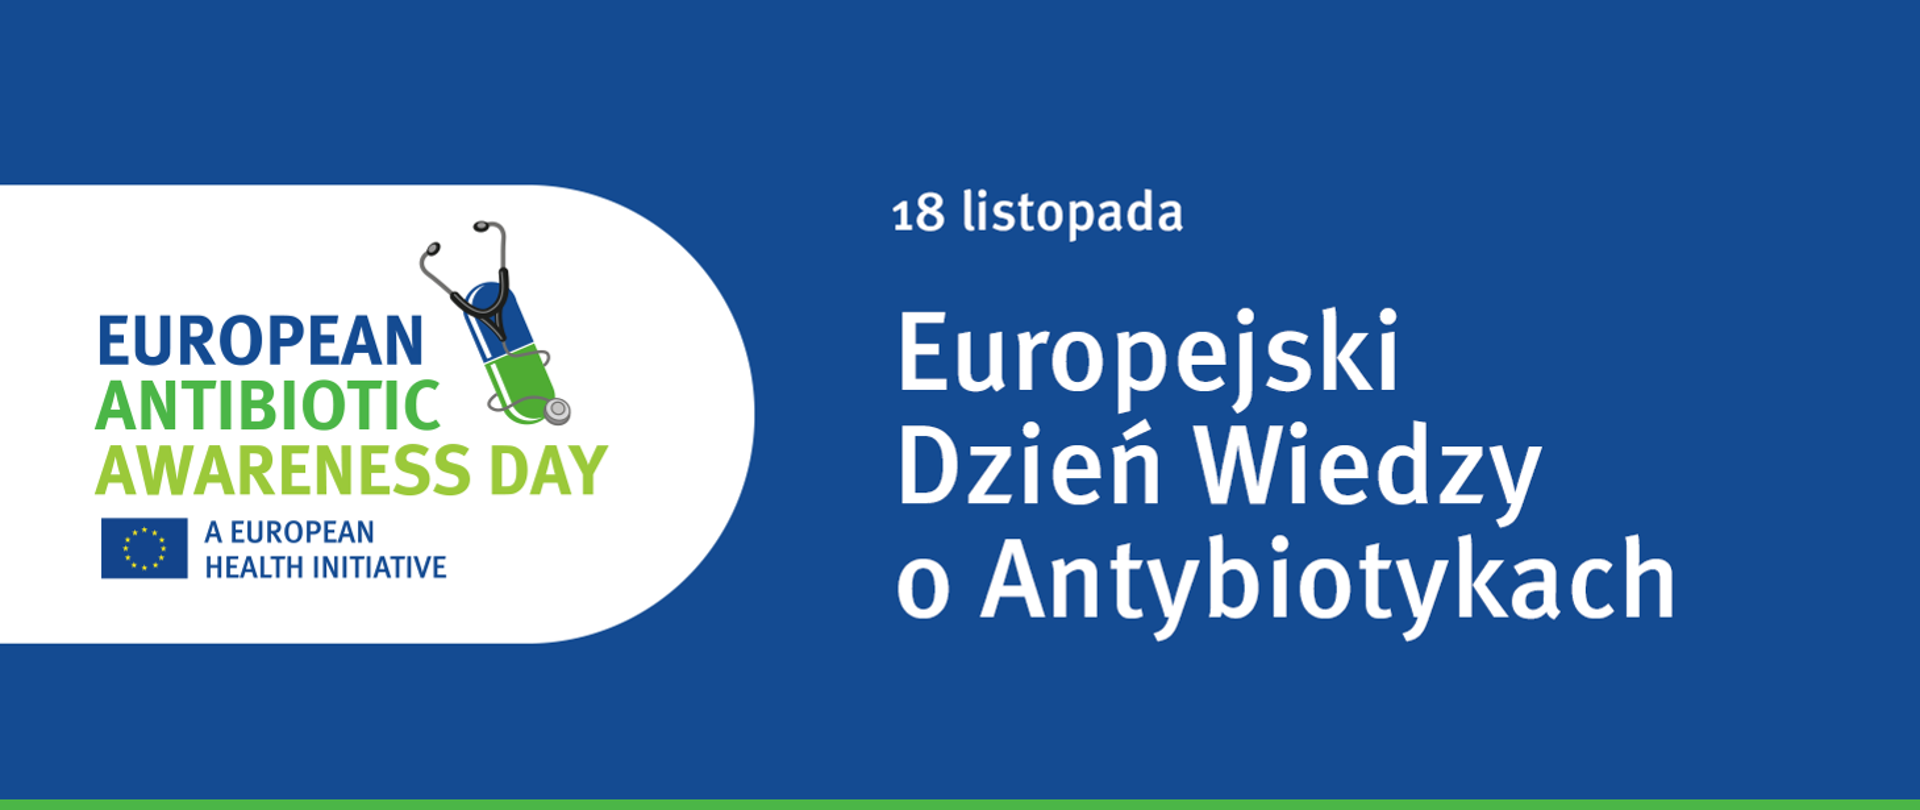 18 listopada Europejski Dzień Wiedzy o Antybiotykach